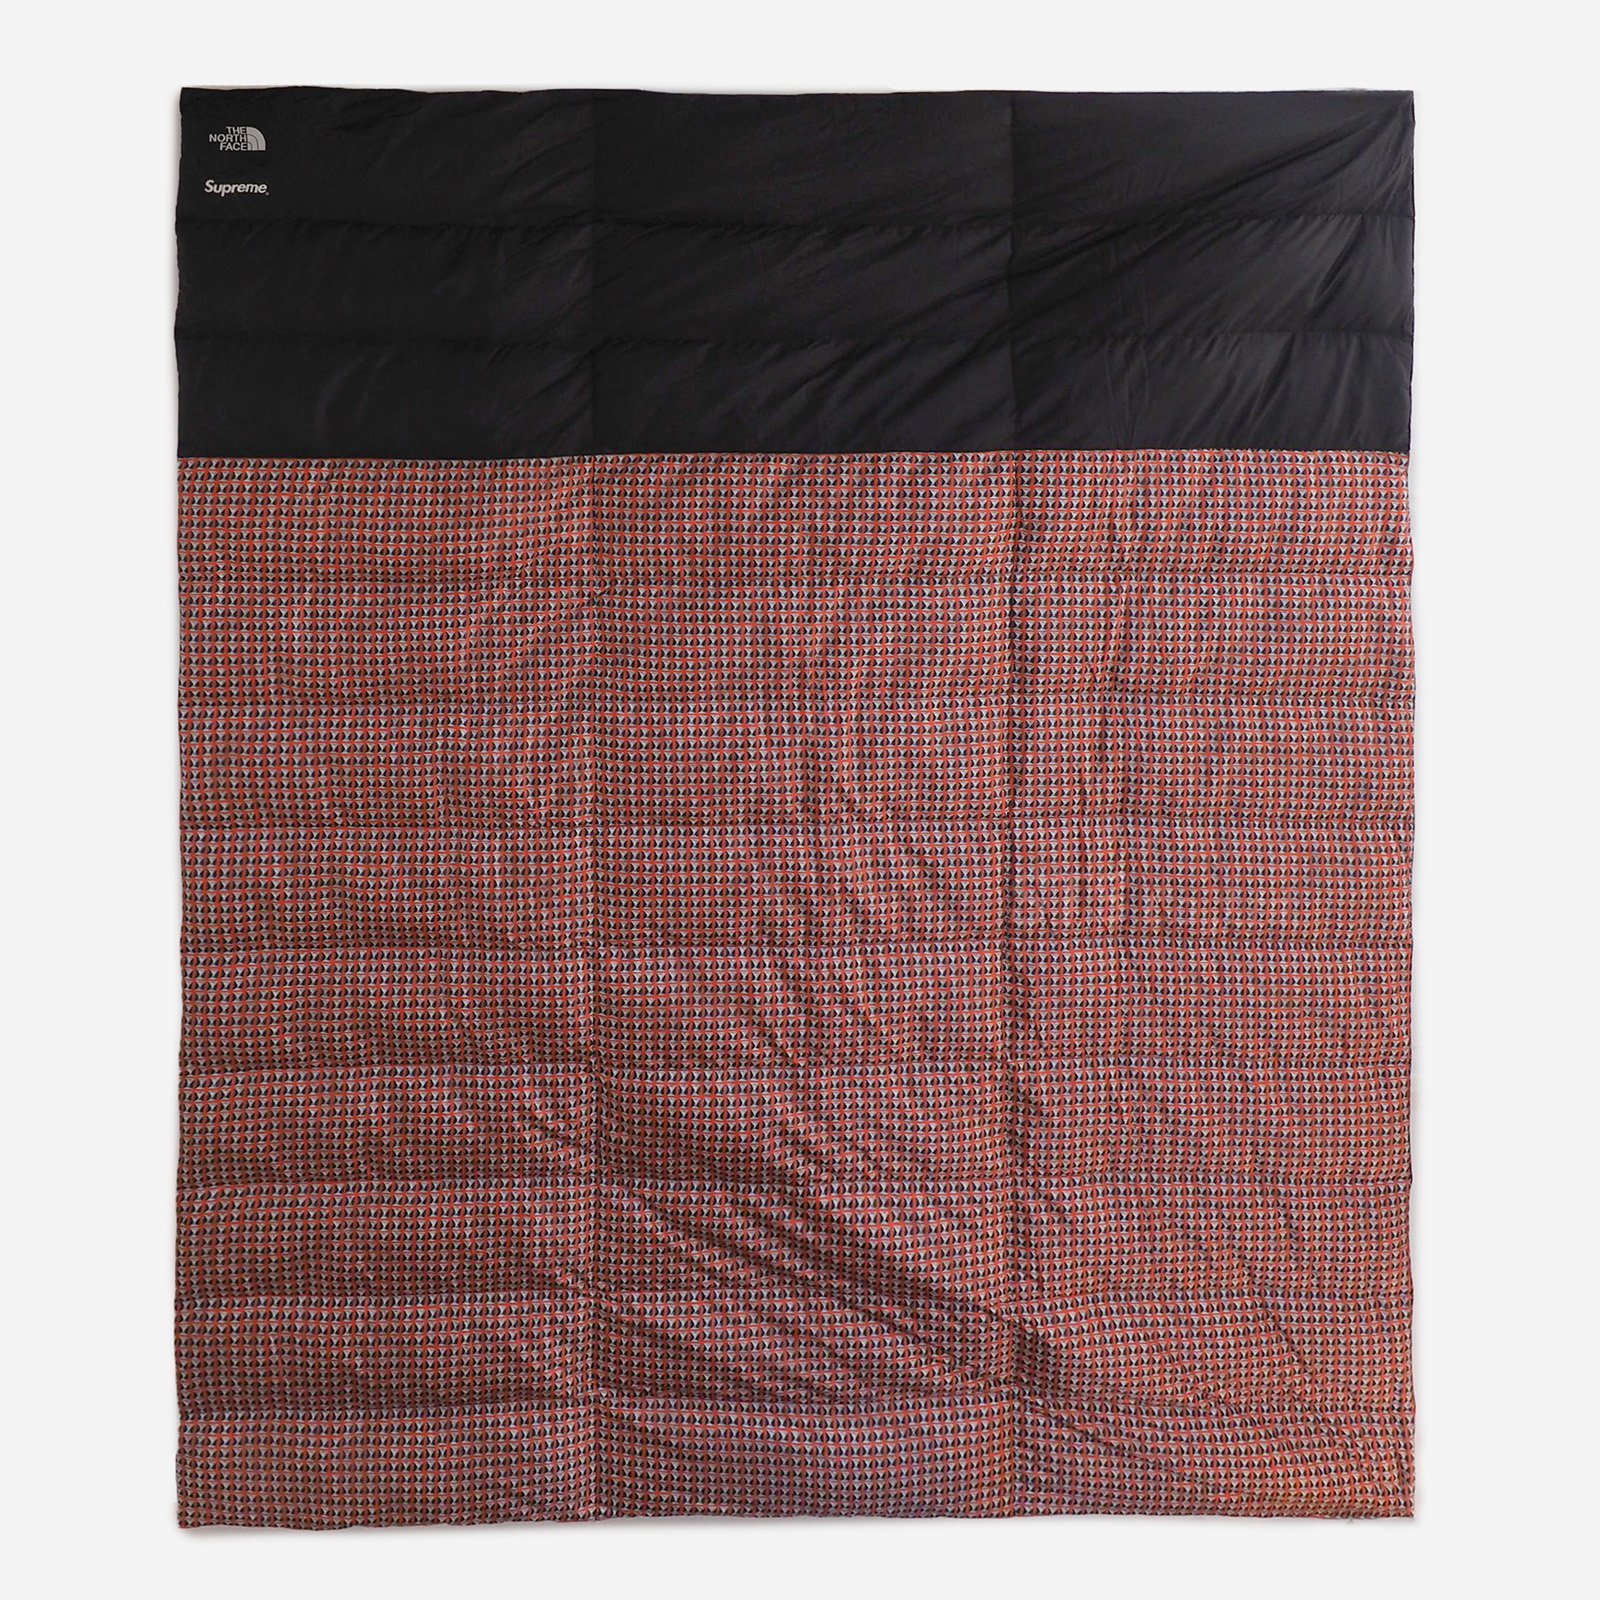 Supreme/The North Face Studded Nuptse Blanket - UG.SHAFT